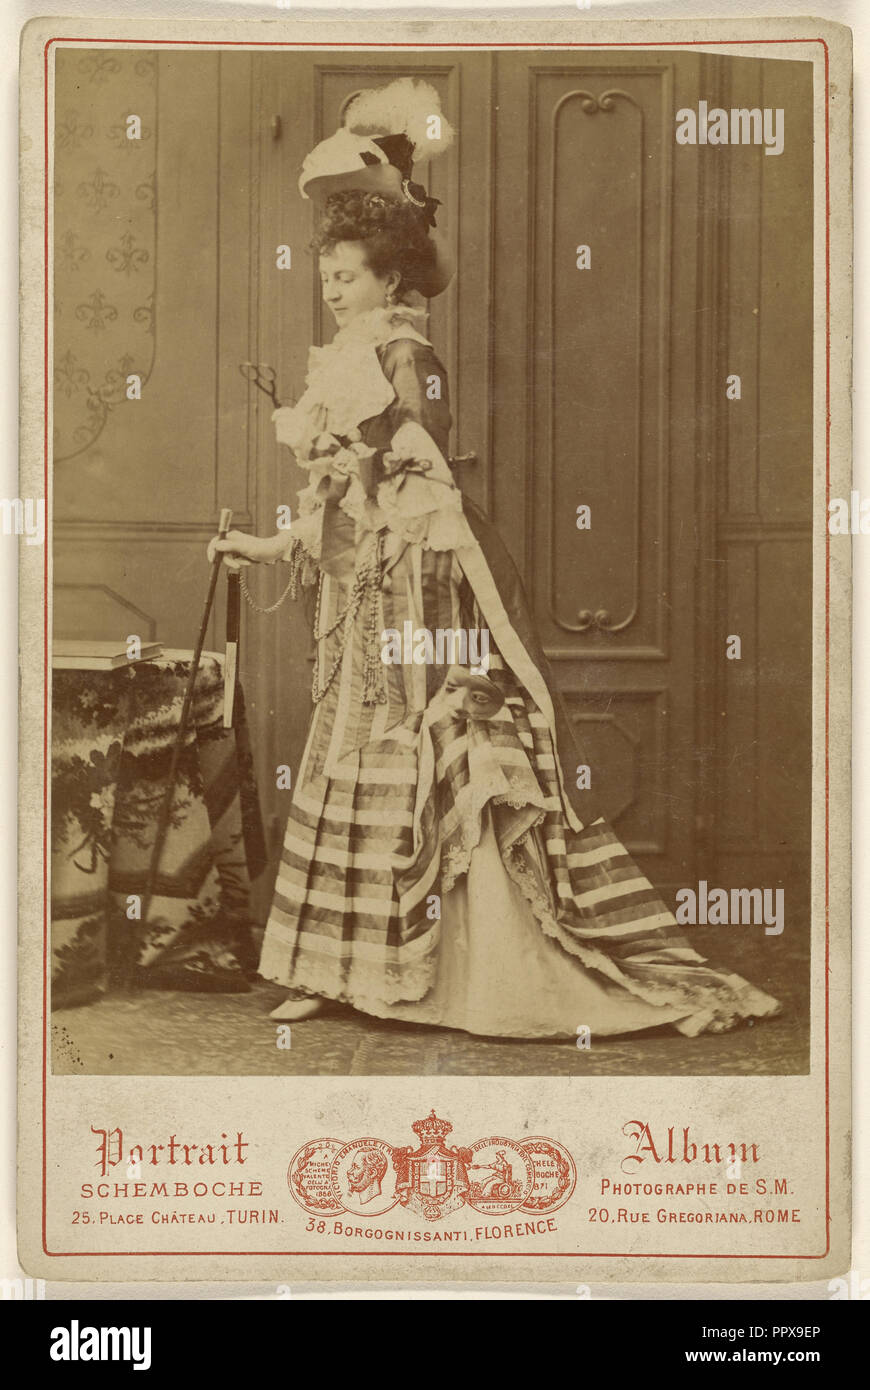 Retrato de cuerpo entero de una mujer bien vestida con bastón; Michele Schemboche, Italiano, activo Turín, Florencia y Roma Foto de stock